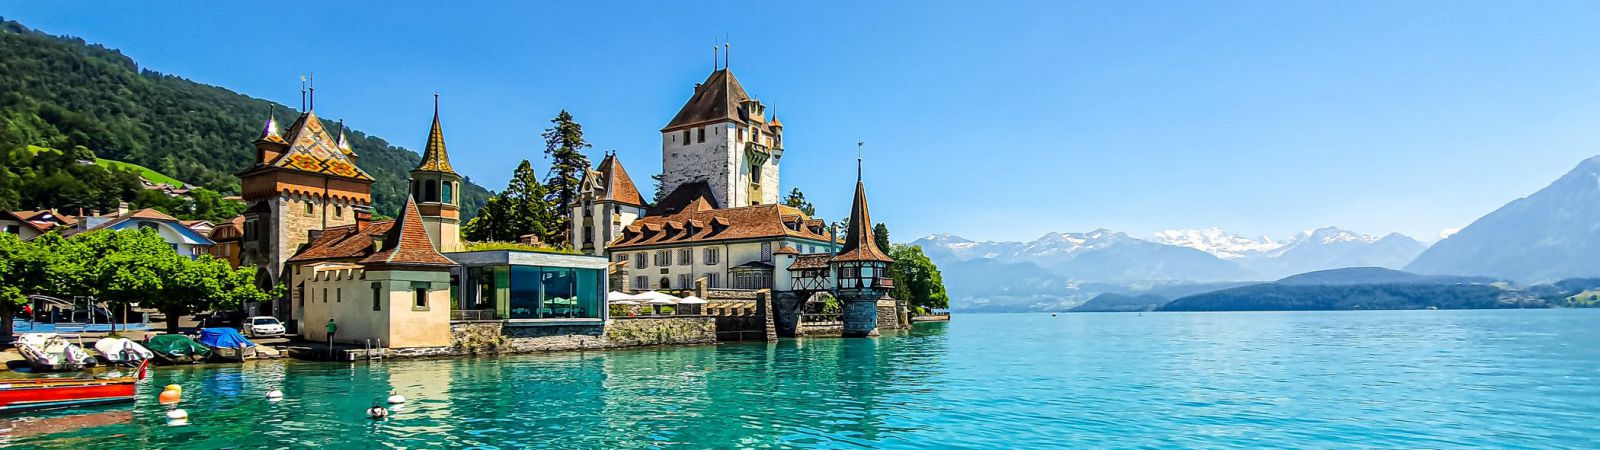 dorpje in Zwitserland naast groot meer